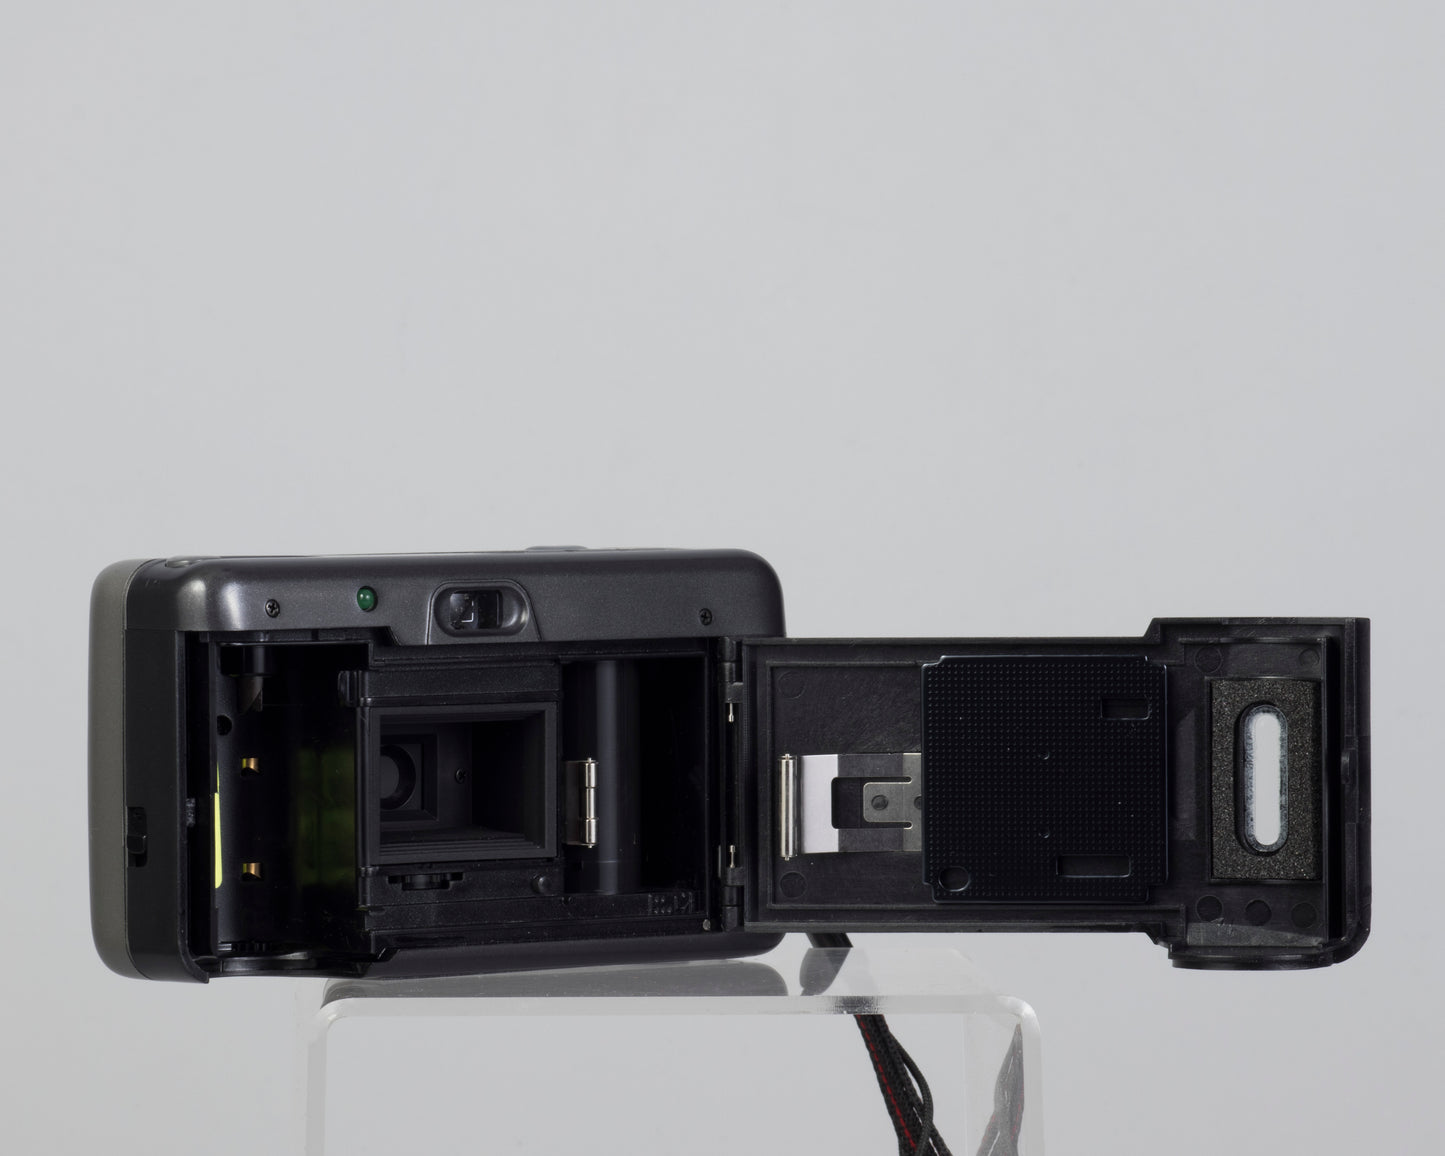 Minox AF-Mini compact 35mm film camera (serial D065239)